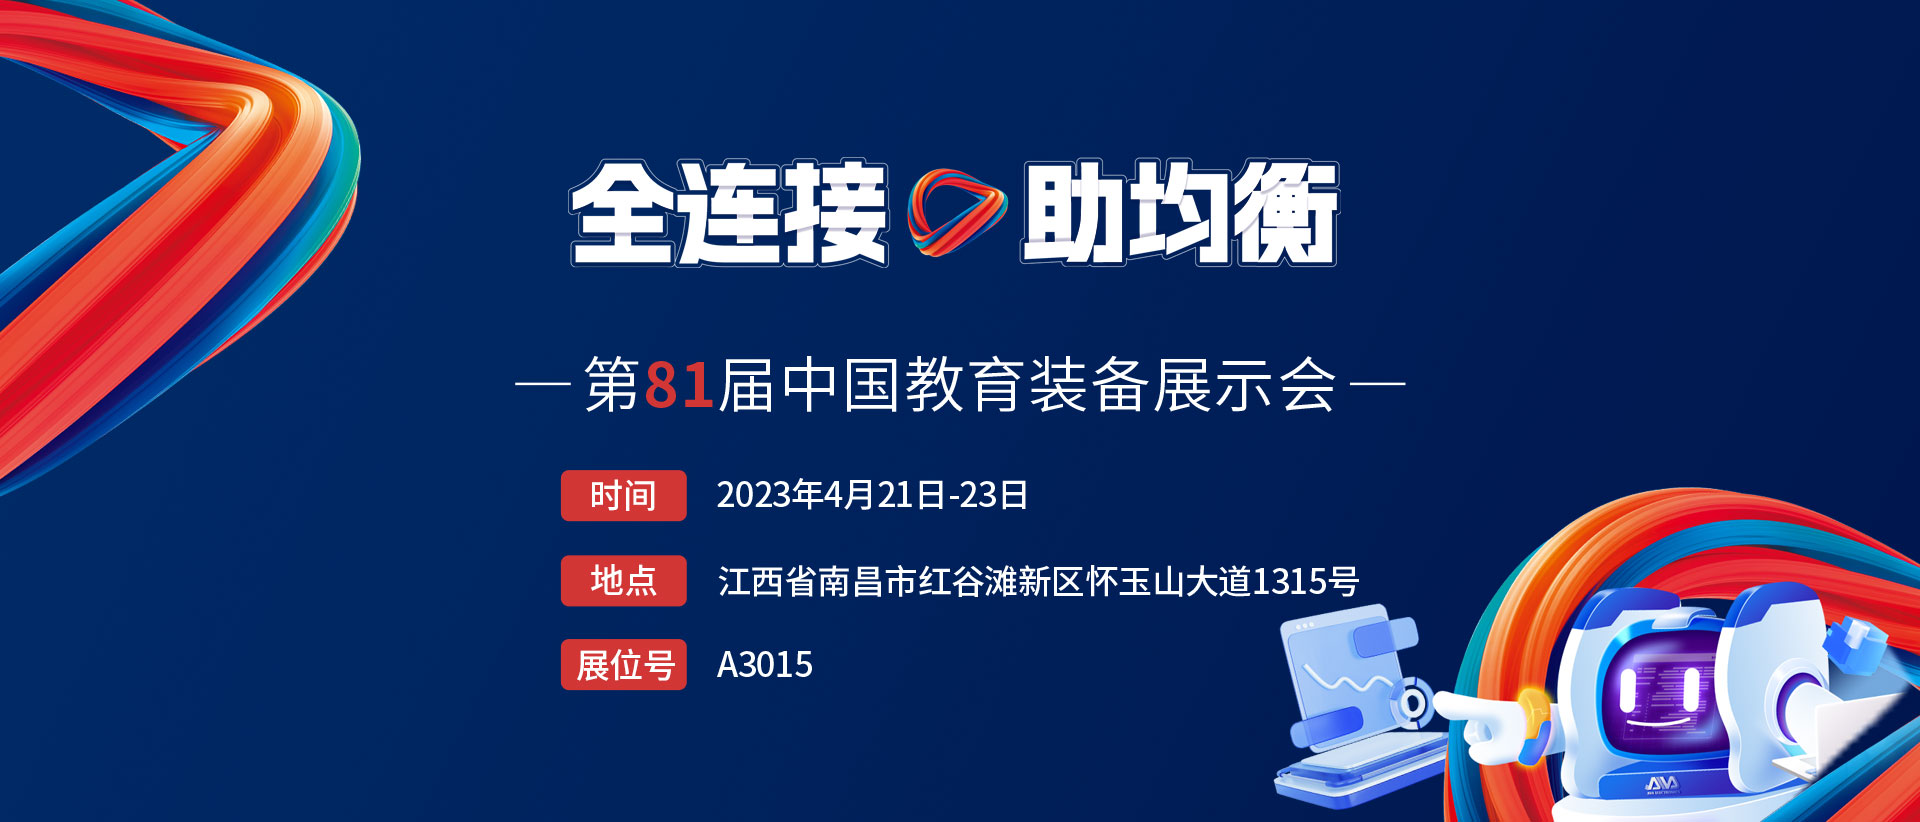 展会抢先看 | bat365在线官网登录入口AI系列新品方案将重磅亮相第81届中国教装展